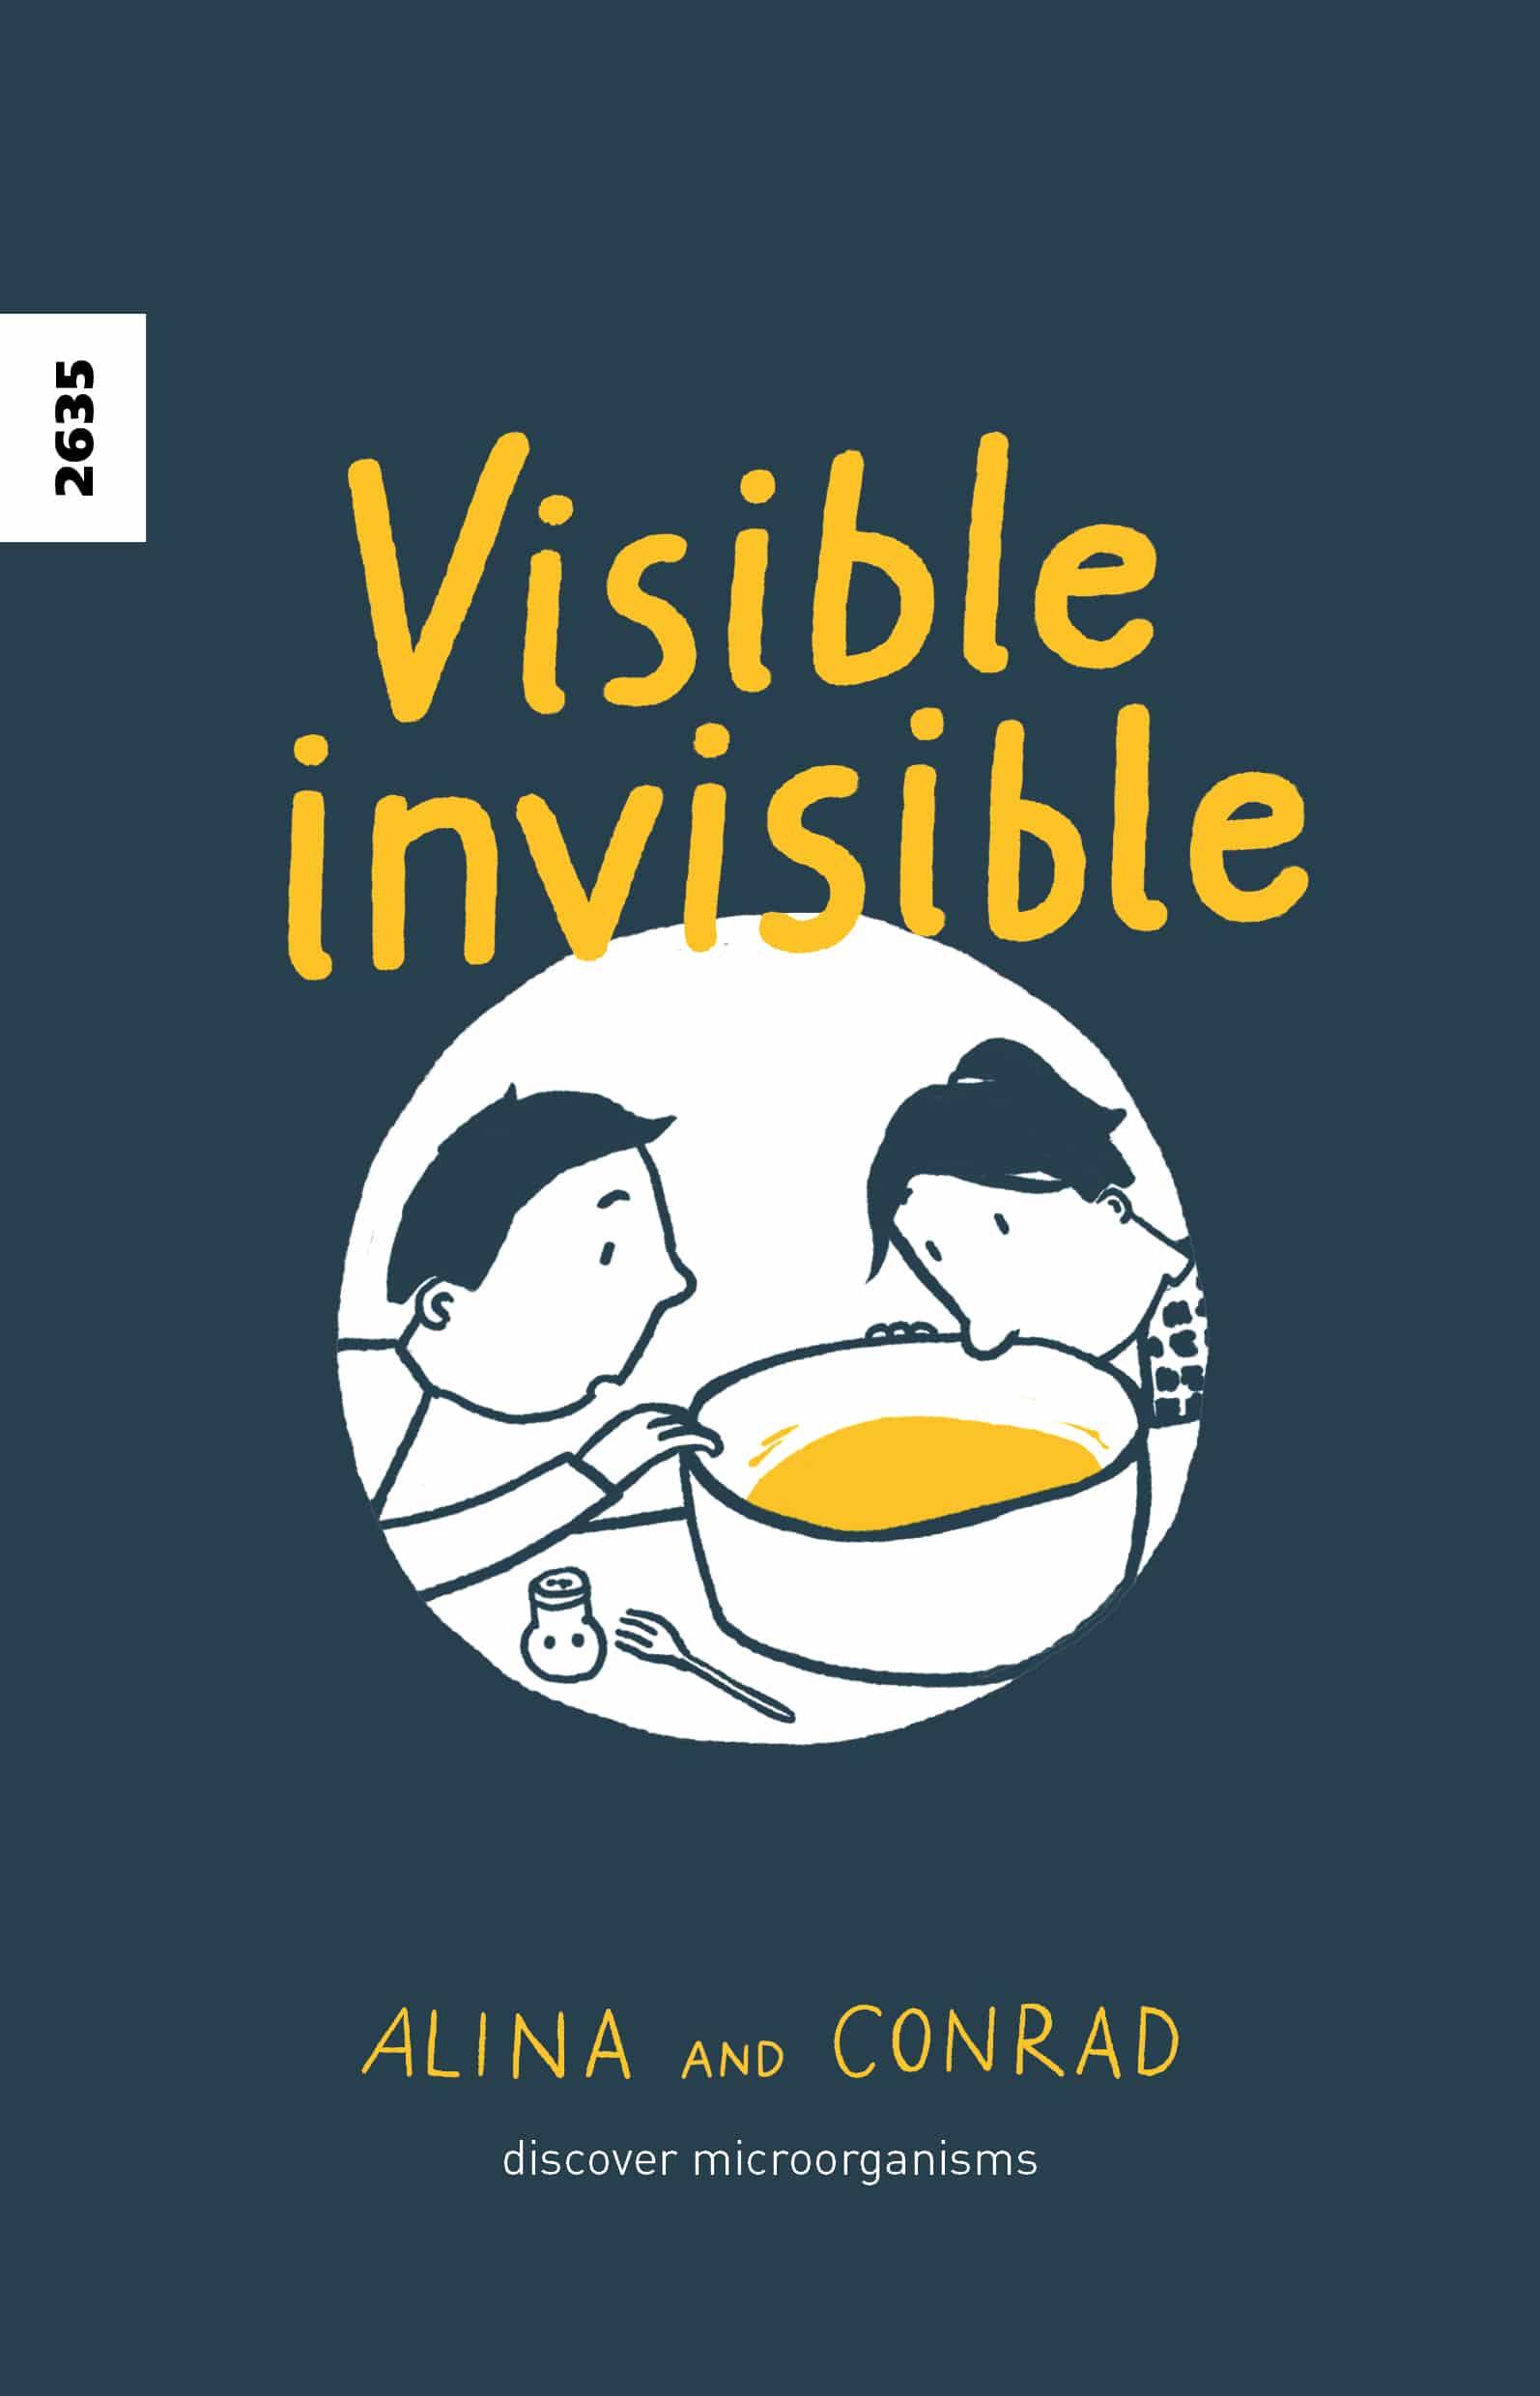 Visible invisible, ein Buch von Karin Kovar u.a., Illustration von Julia Duerr, SJW Verlag, Comic, Mikroorganismen